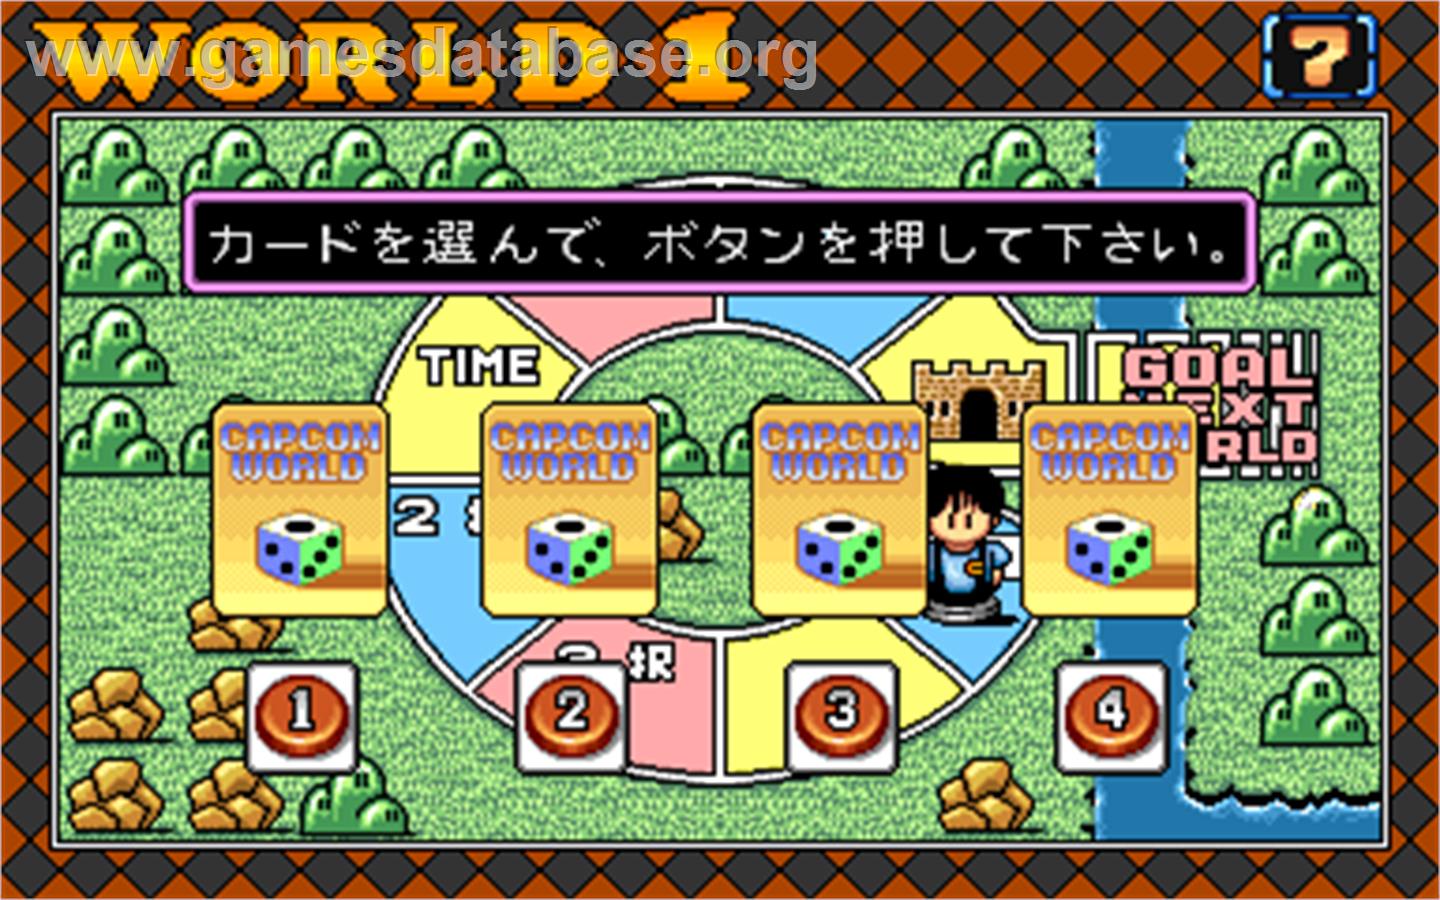 Capcom World - Arcade - Artwork - Select Screen